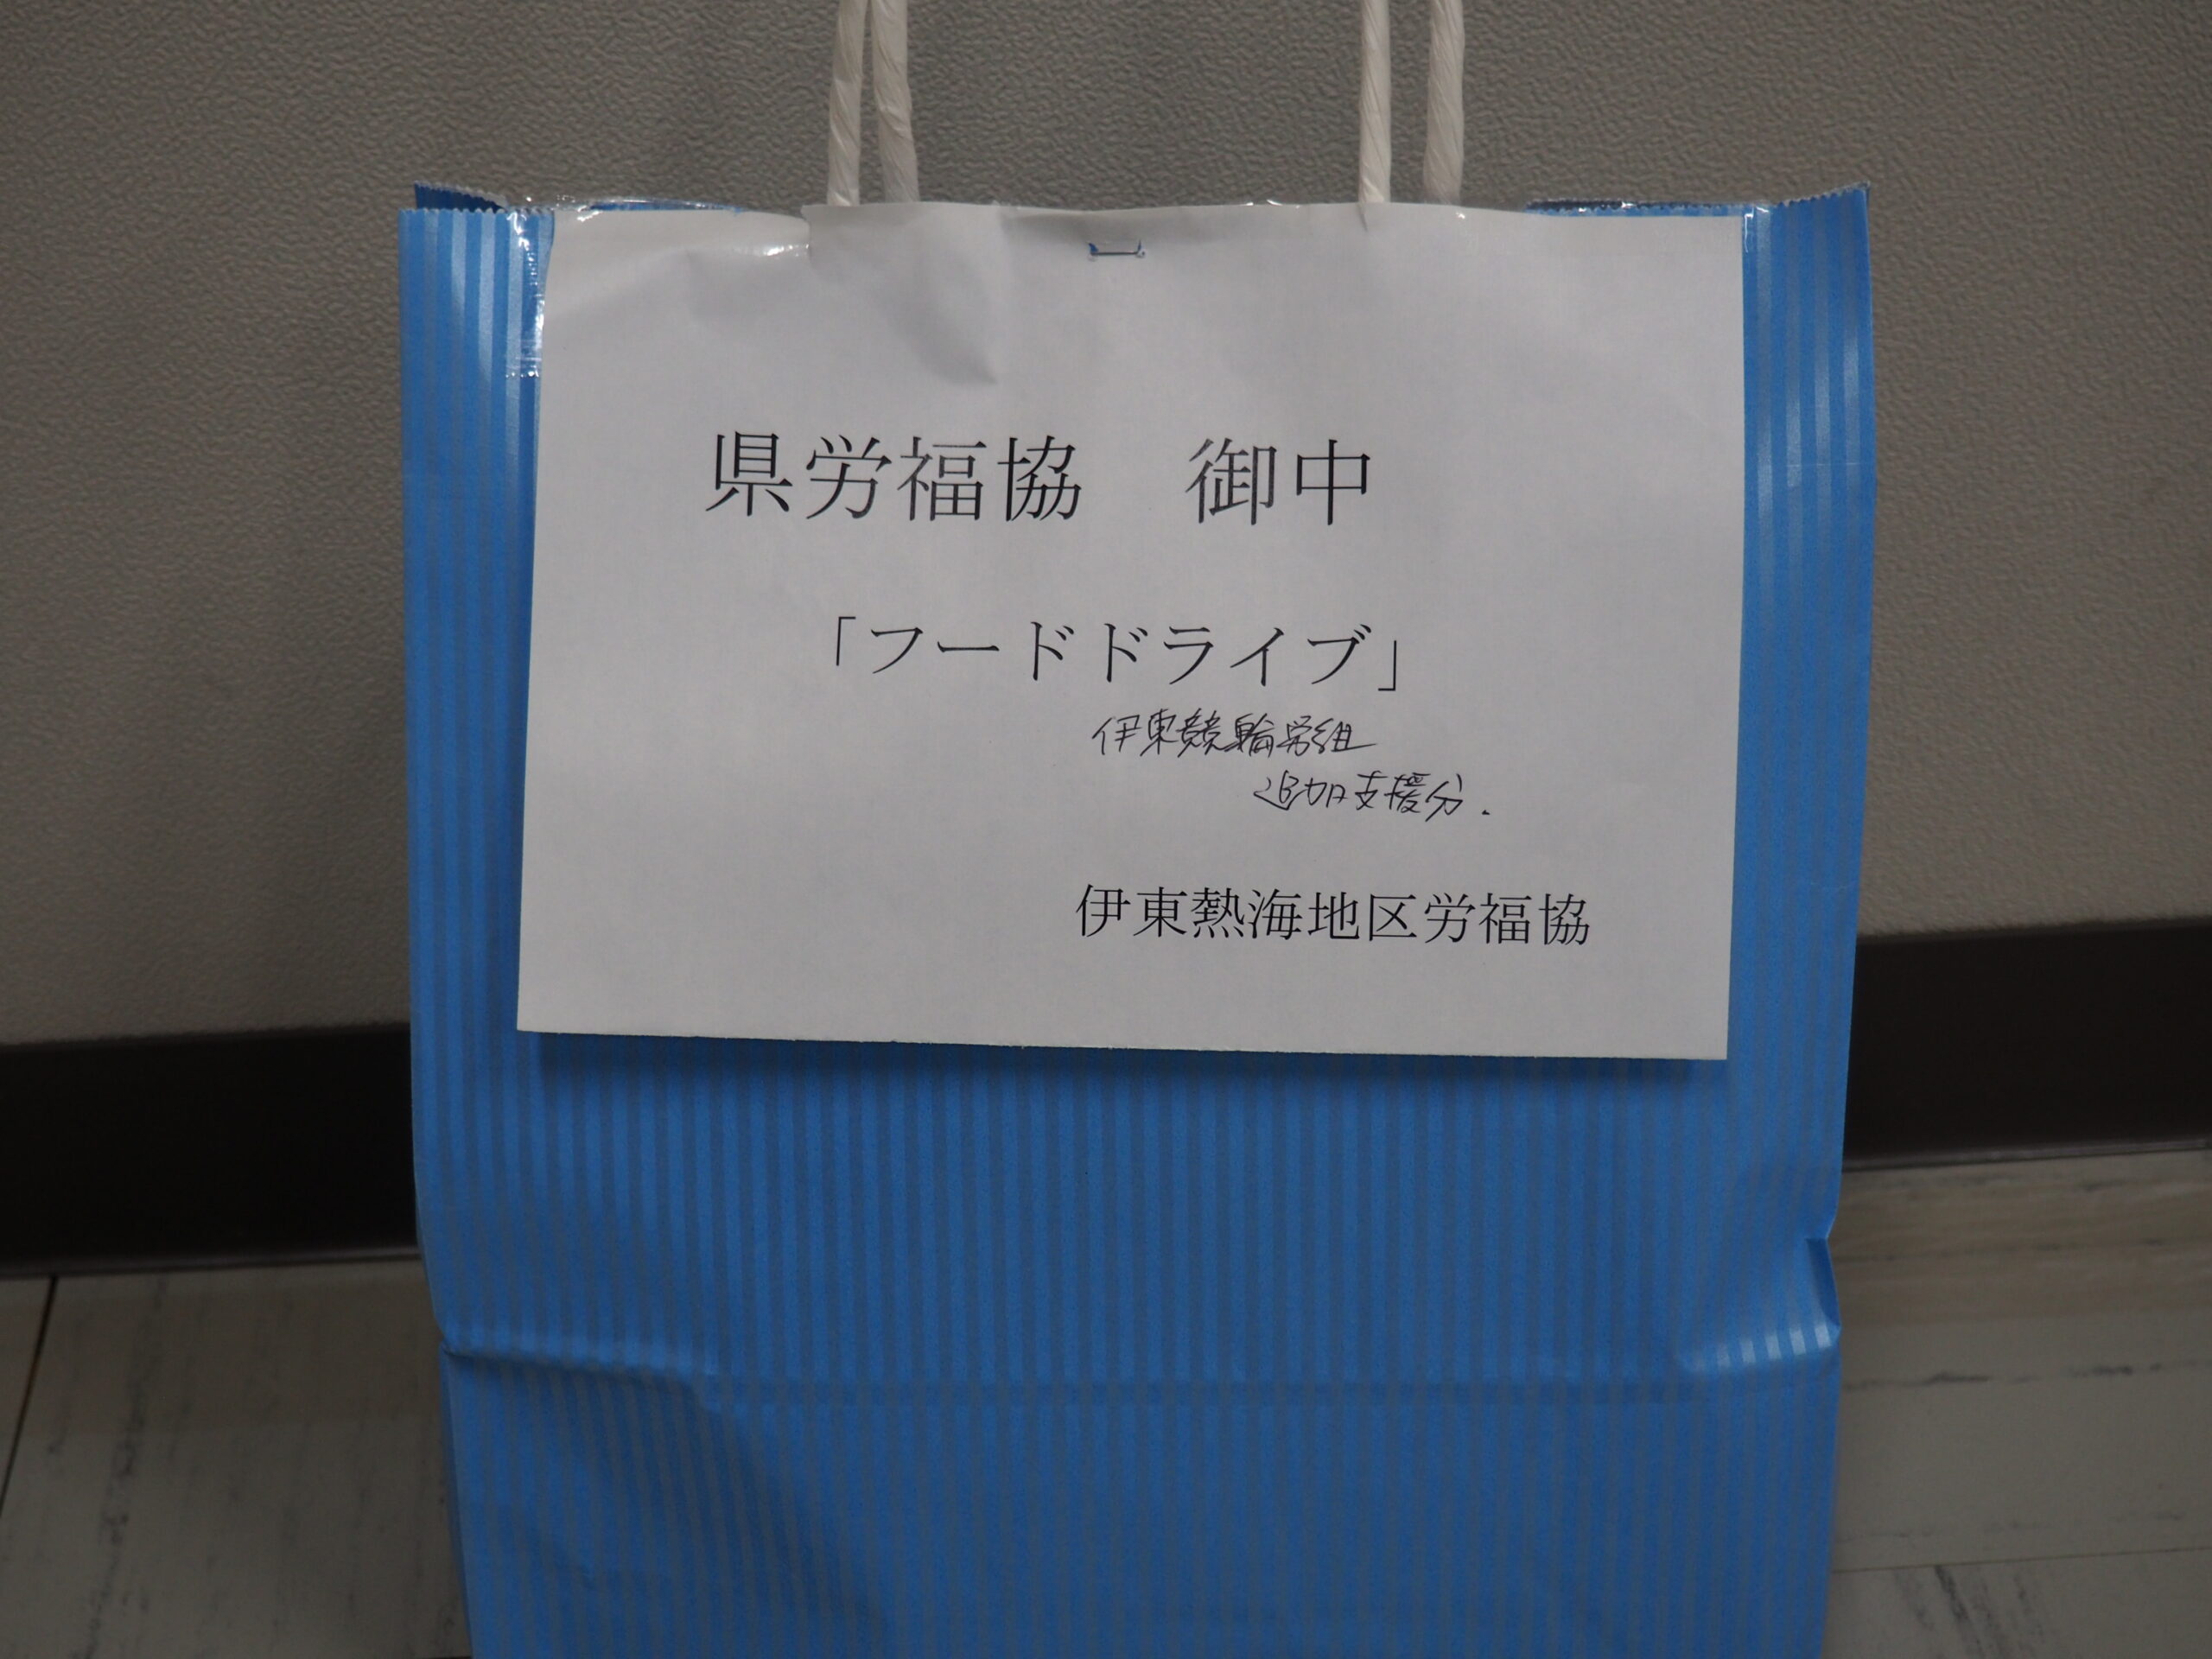 伊東競輪労働組合様・掛川市勤労者協議会様から食品を提供いただきました。